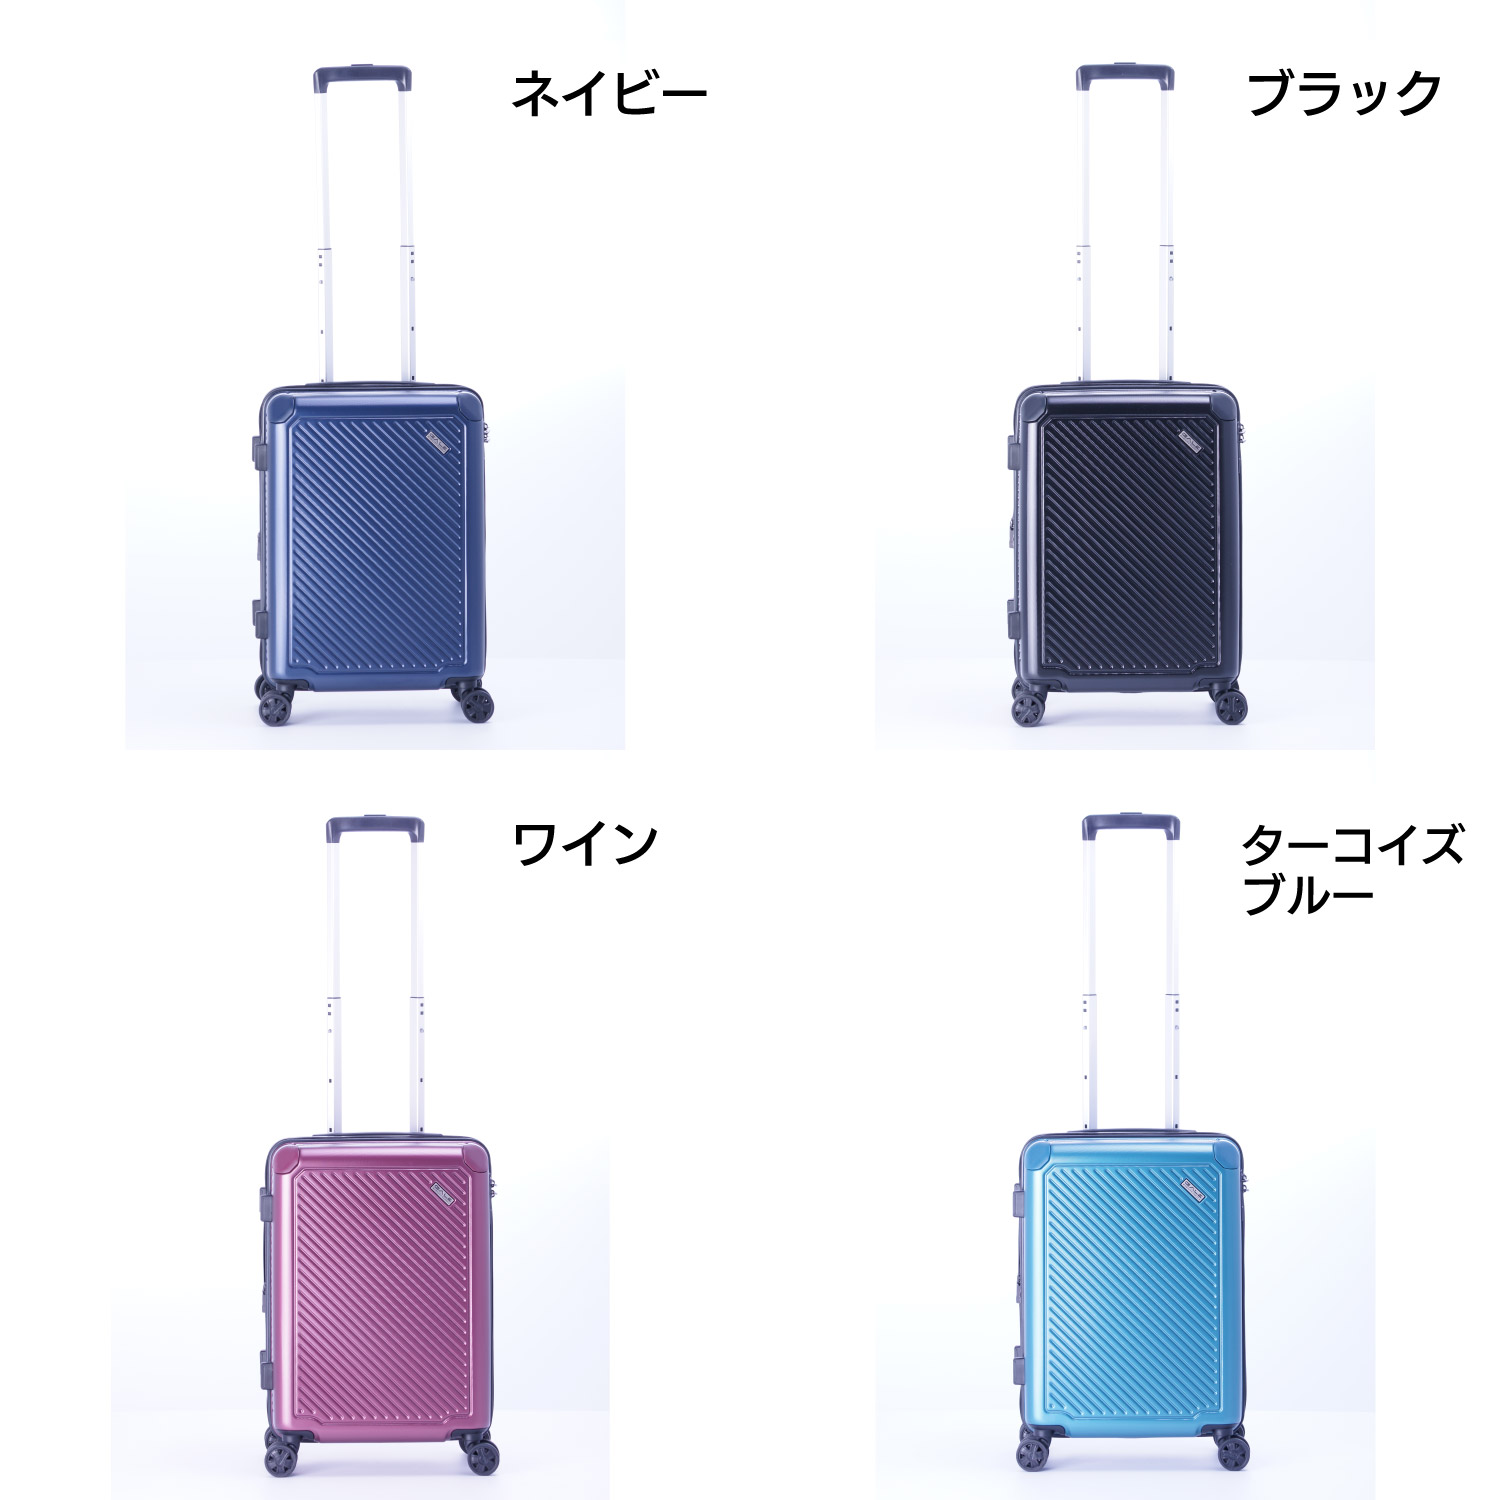 A.L.I アジア・ラゲージのスーツケース、拡張機能搭載!! GALE ALI-6020